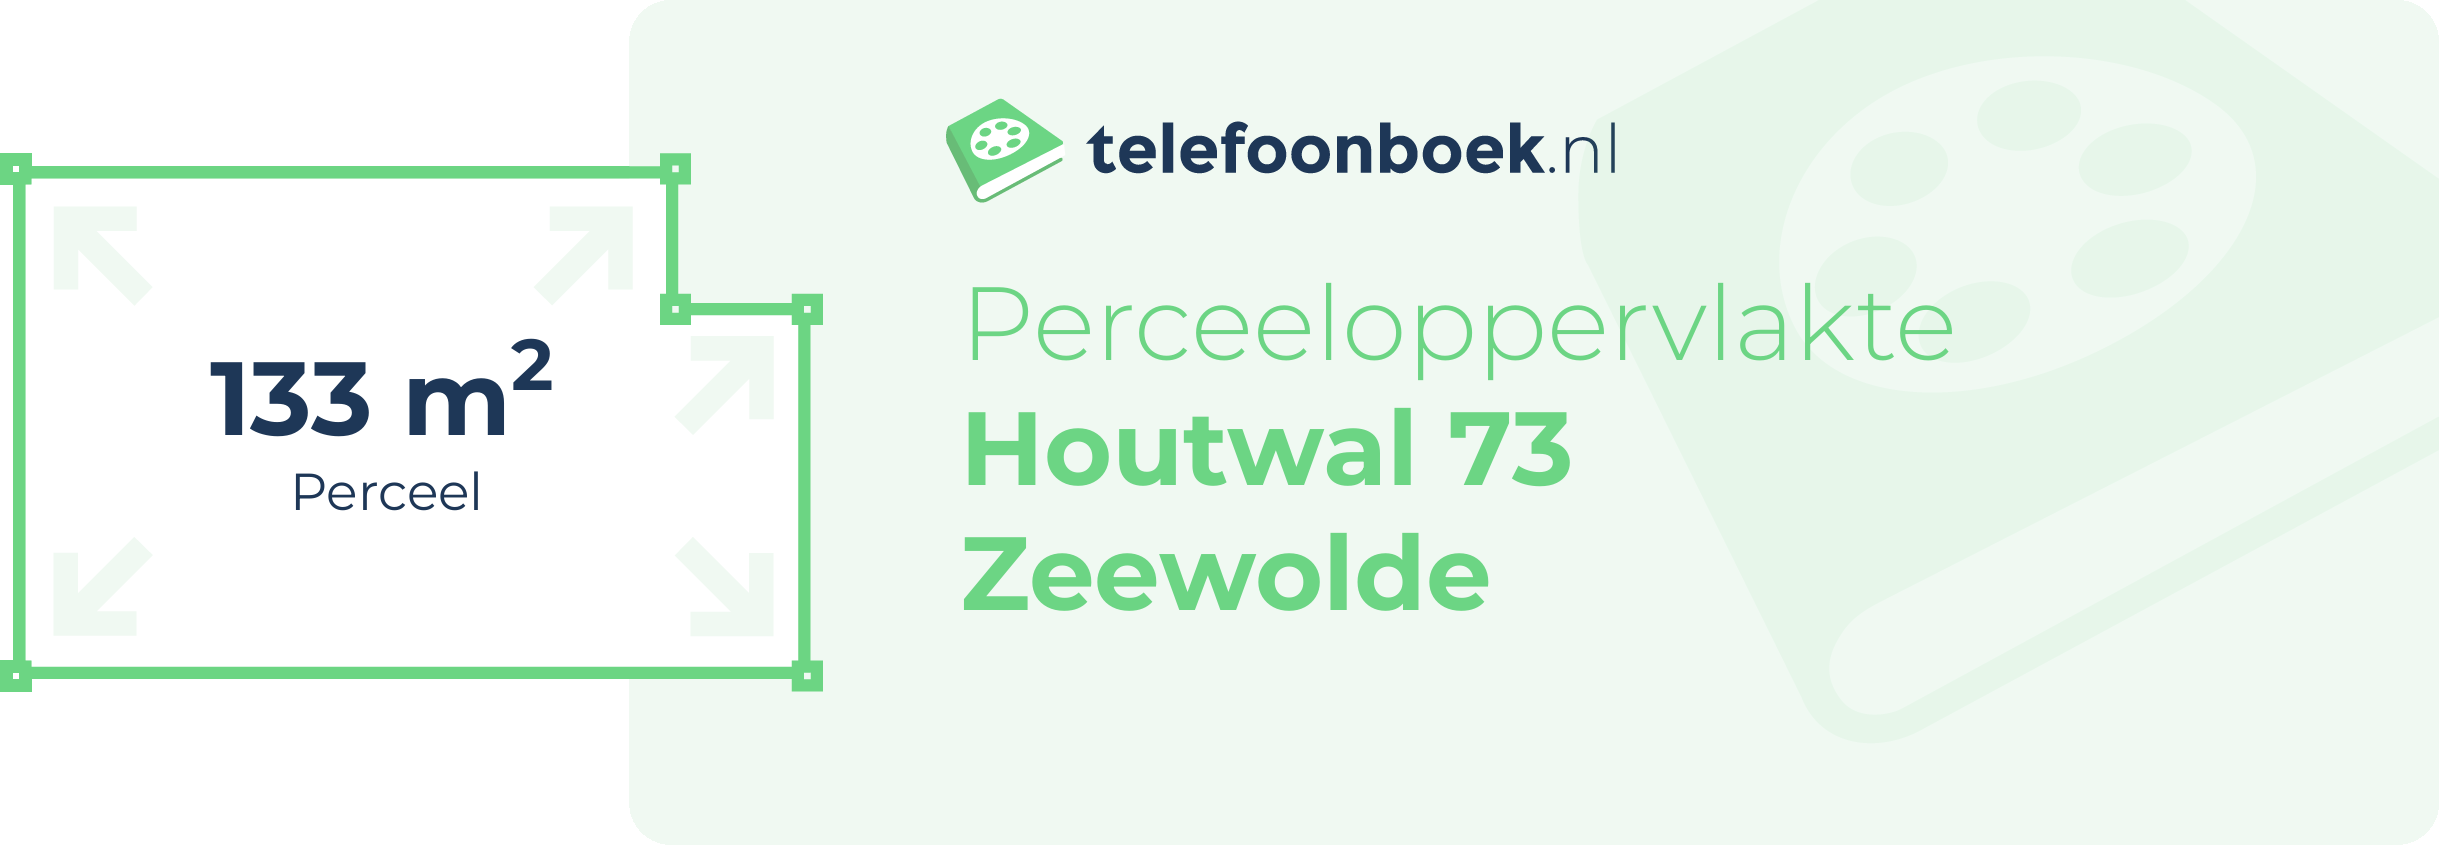 Perceeloppervlakte Houtwal 73 Zeewolde